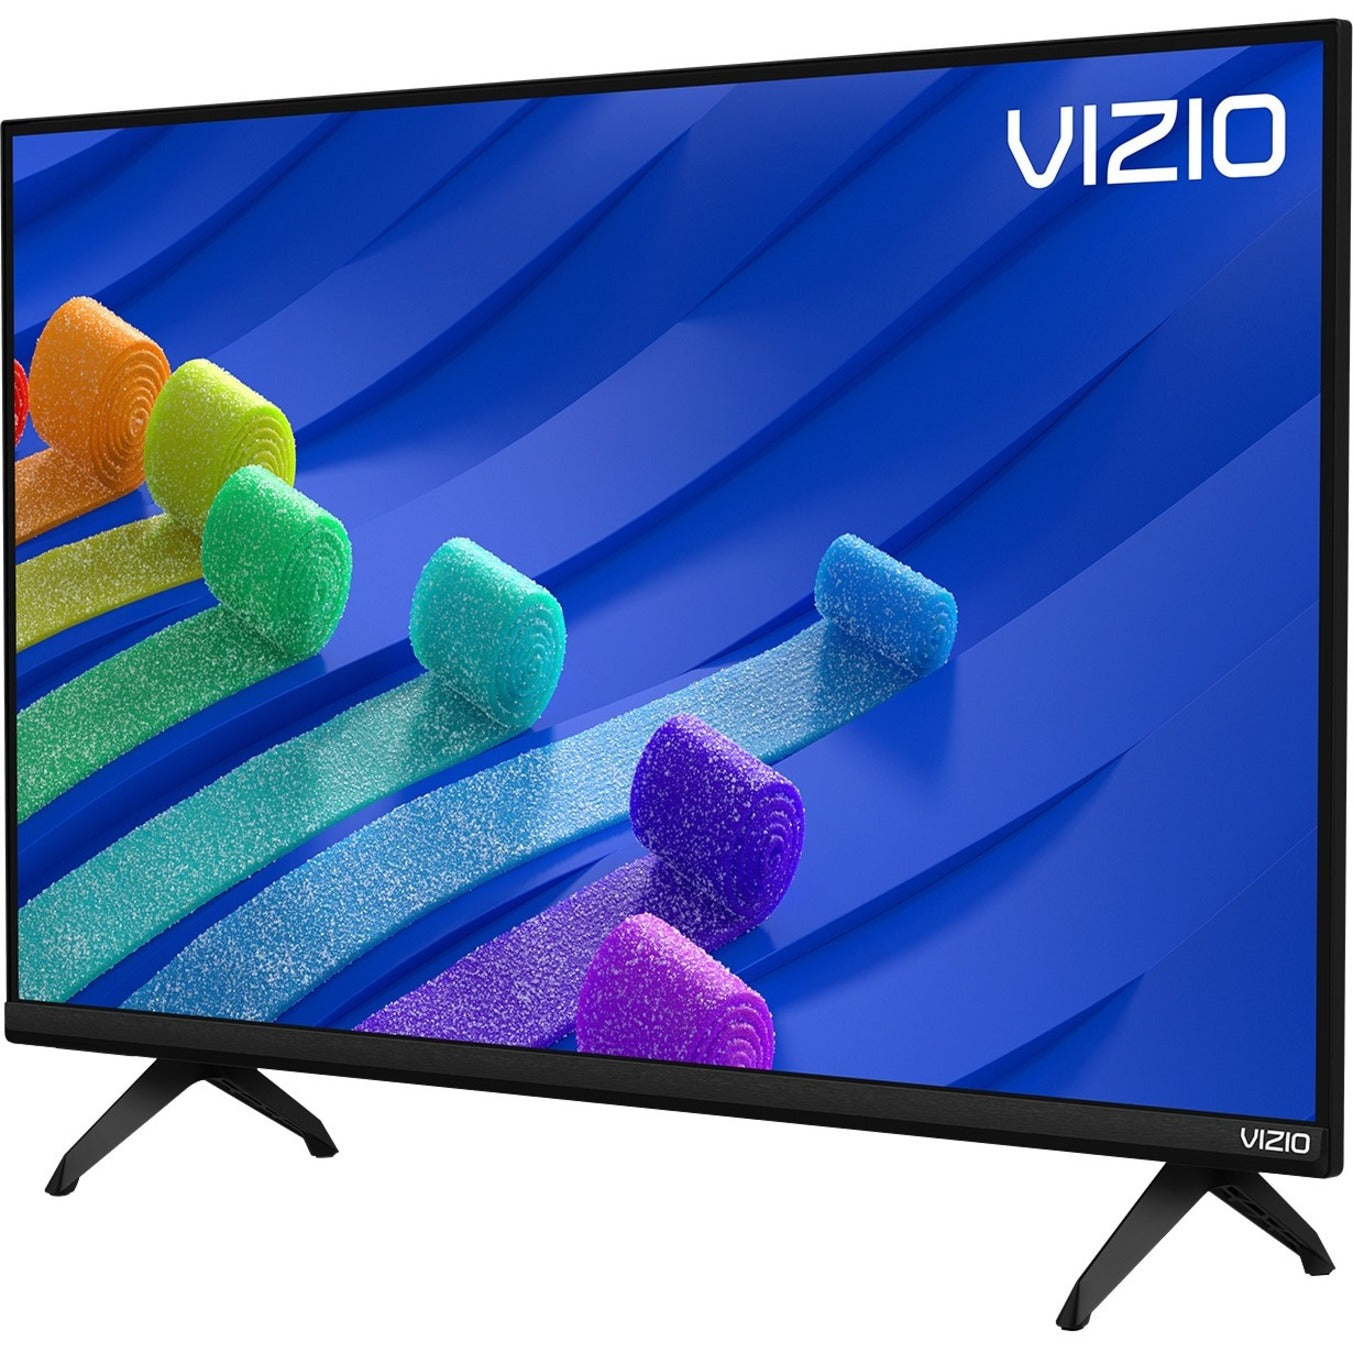 VIZIO D-Series 32 1080p FHD Smart TV - D32fm-K